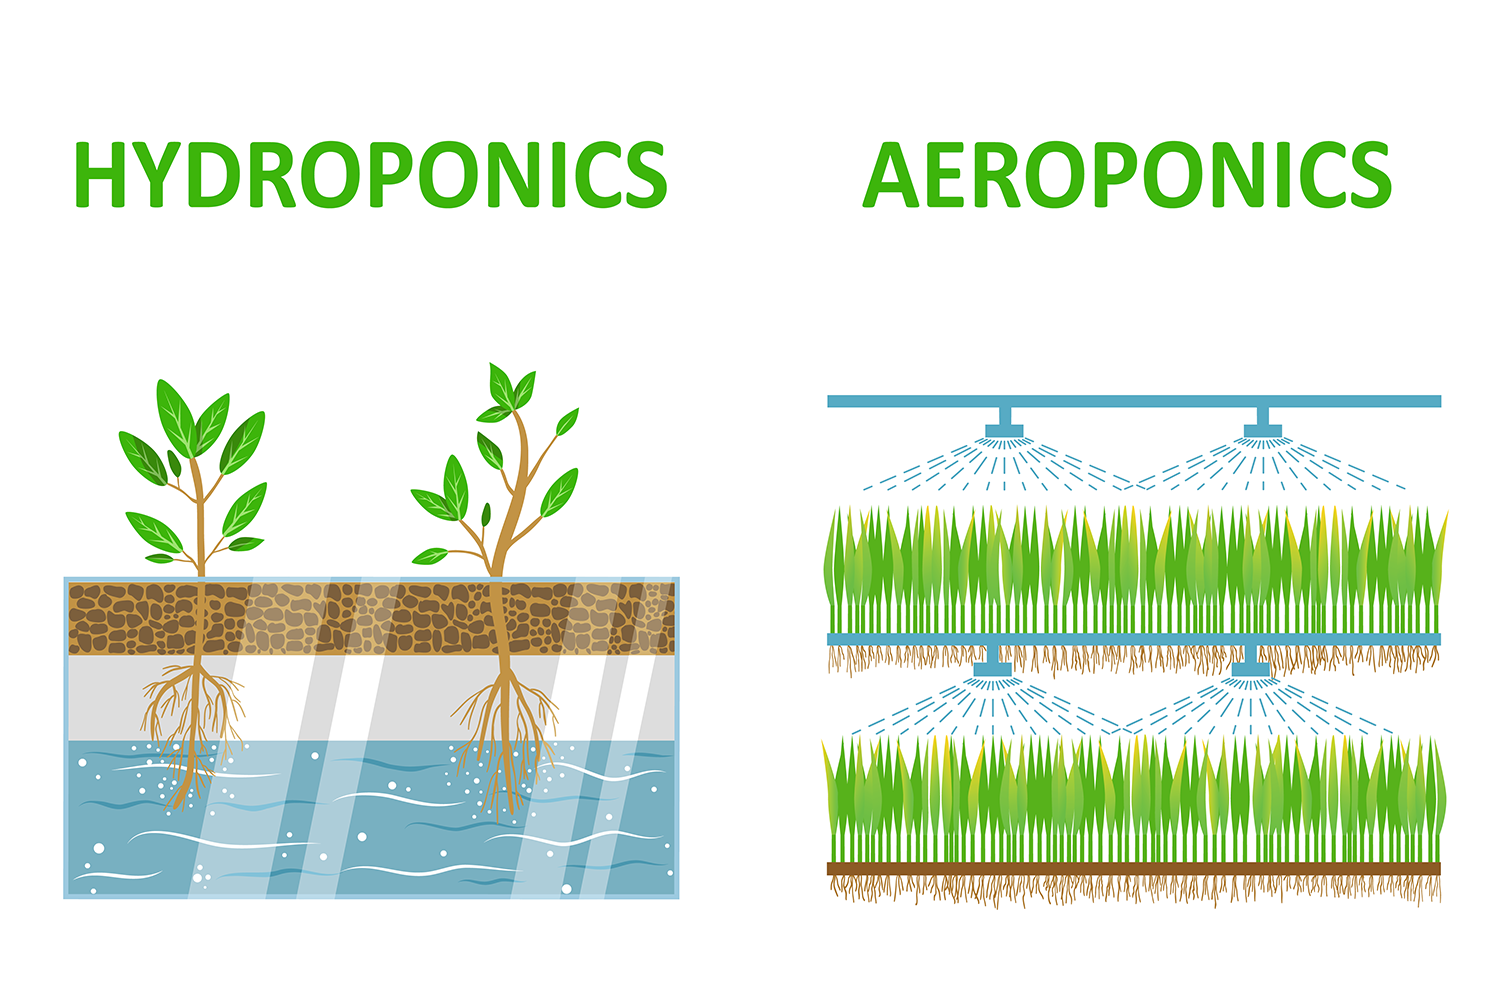 Hydroponics vs Aeroponics